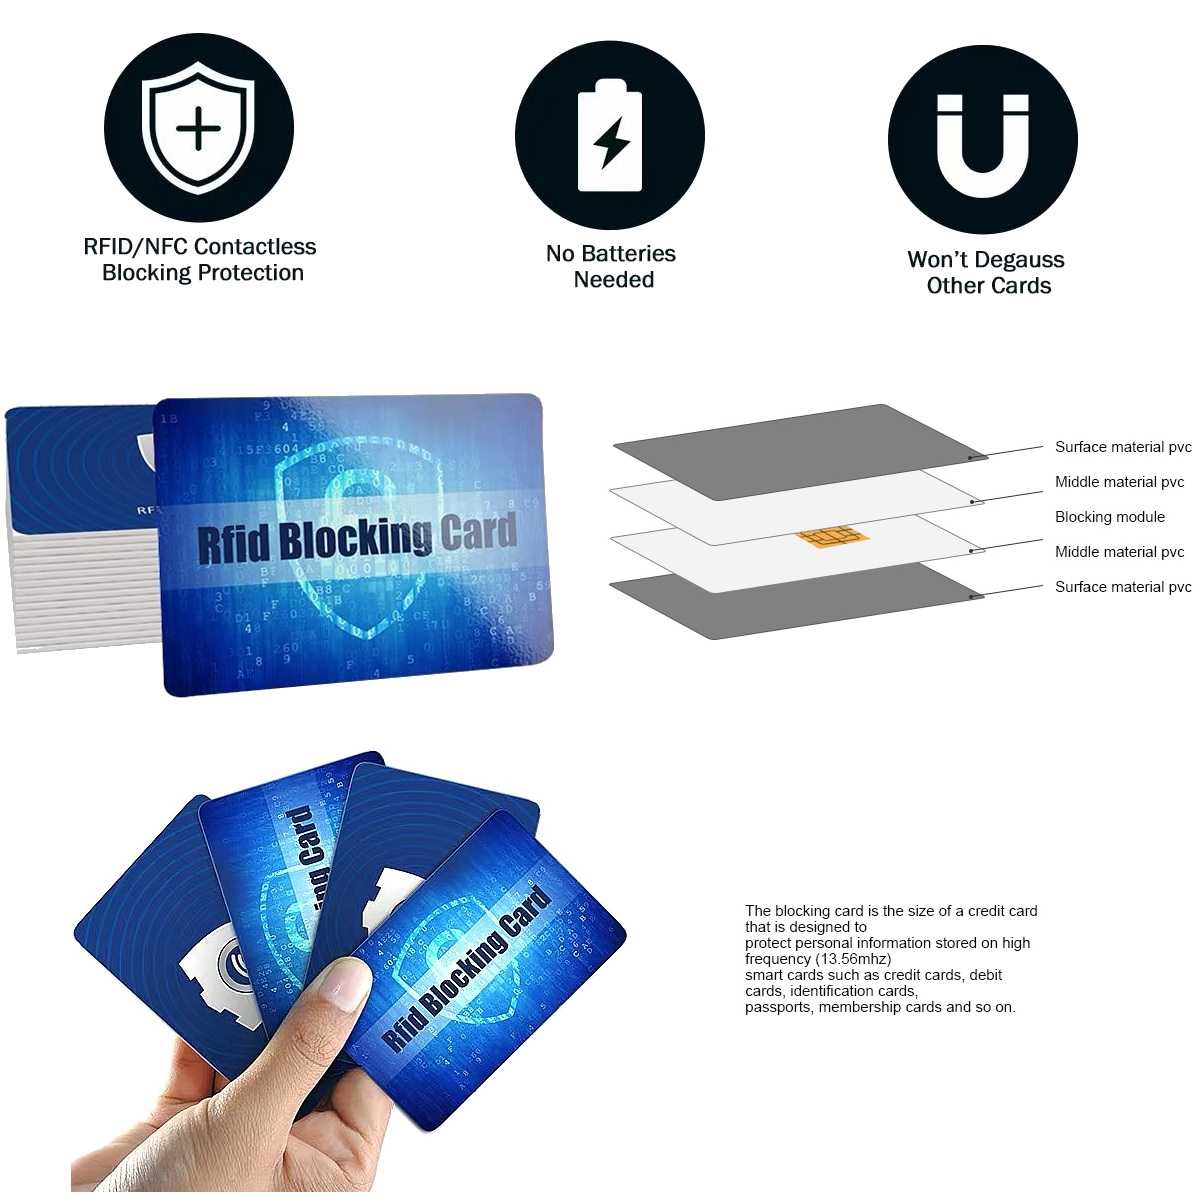 RFID blocking cards